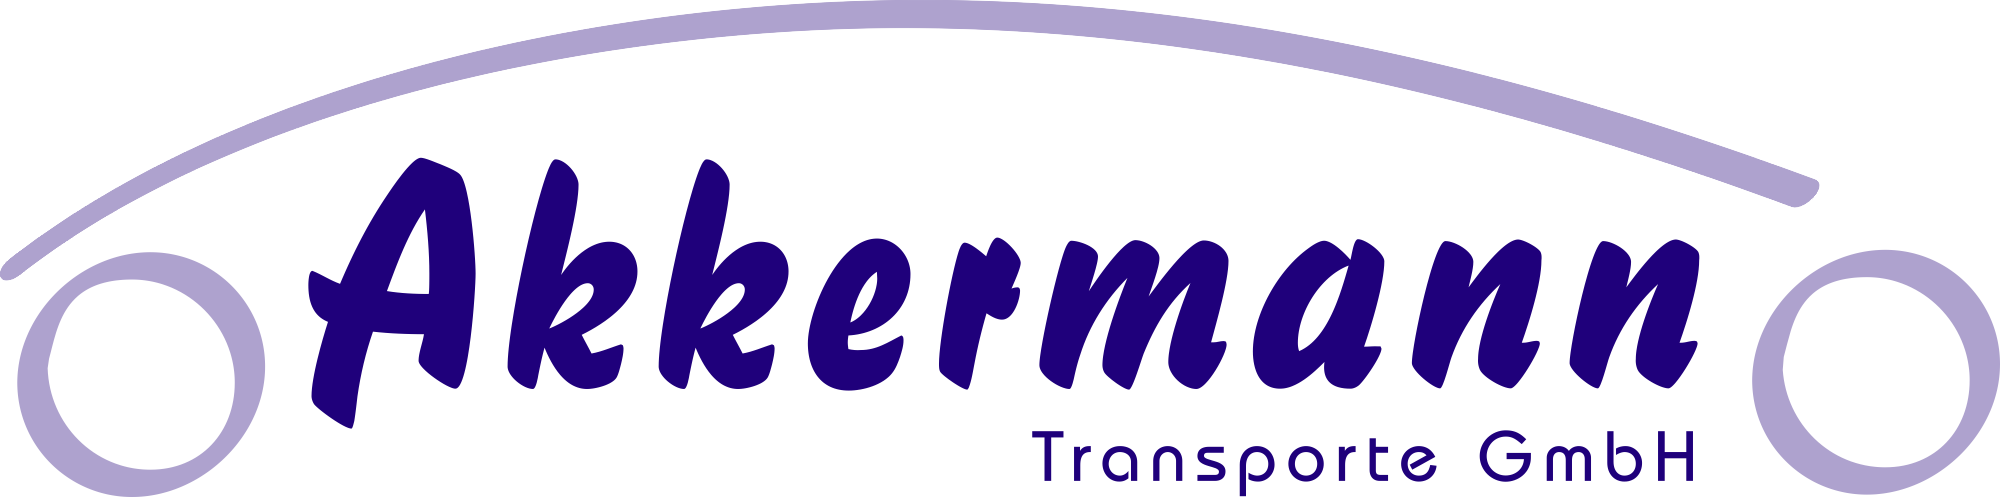 Akkermann Transporte GmbH 